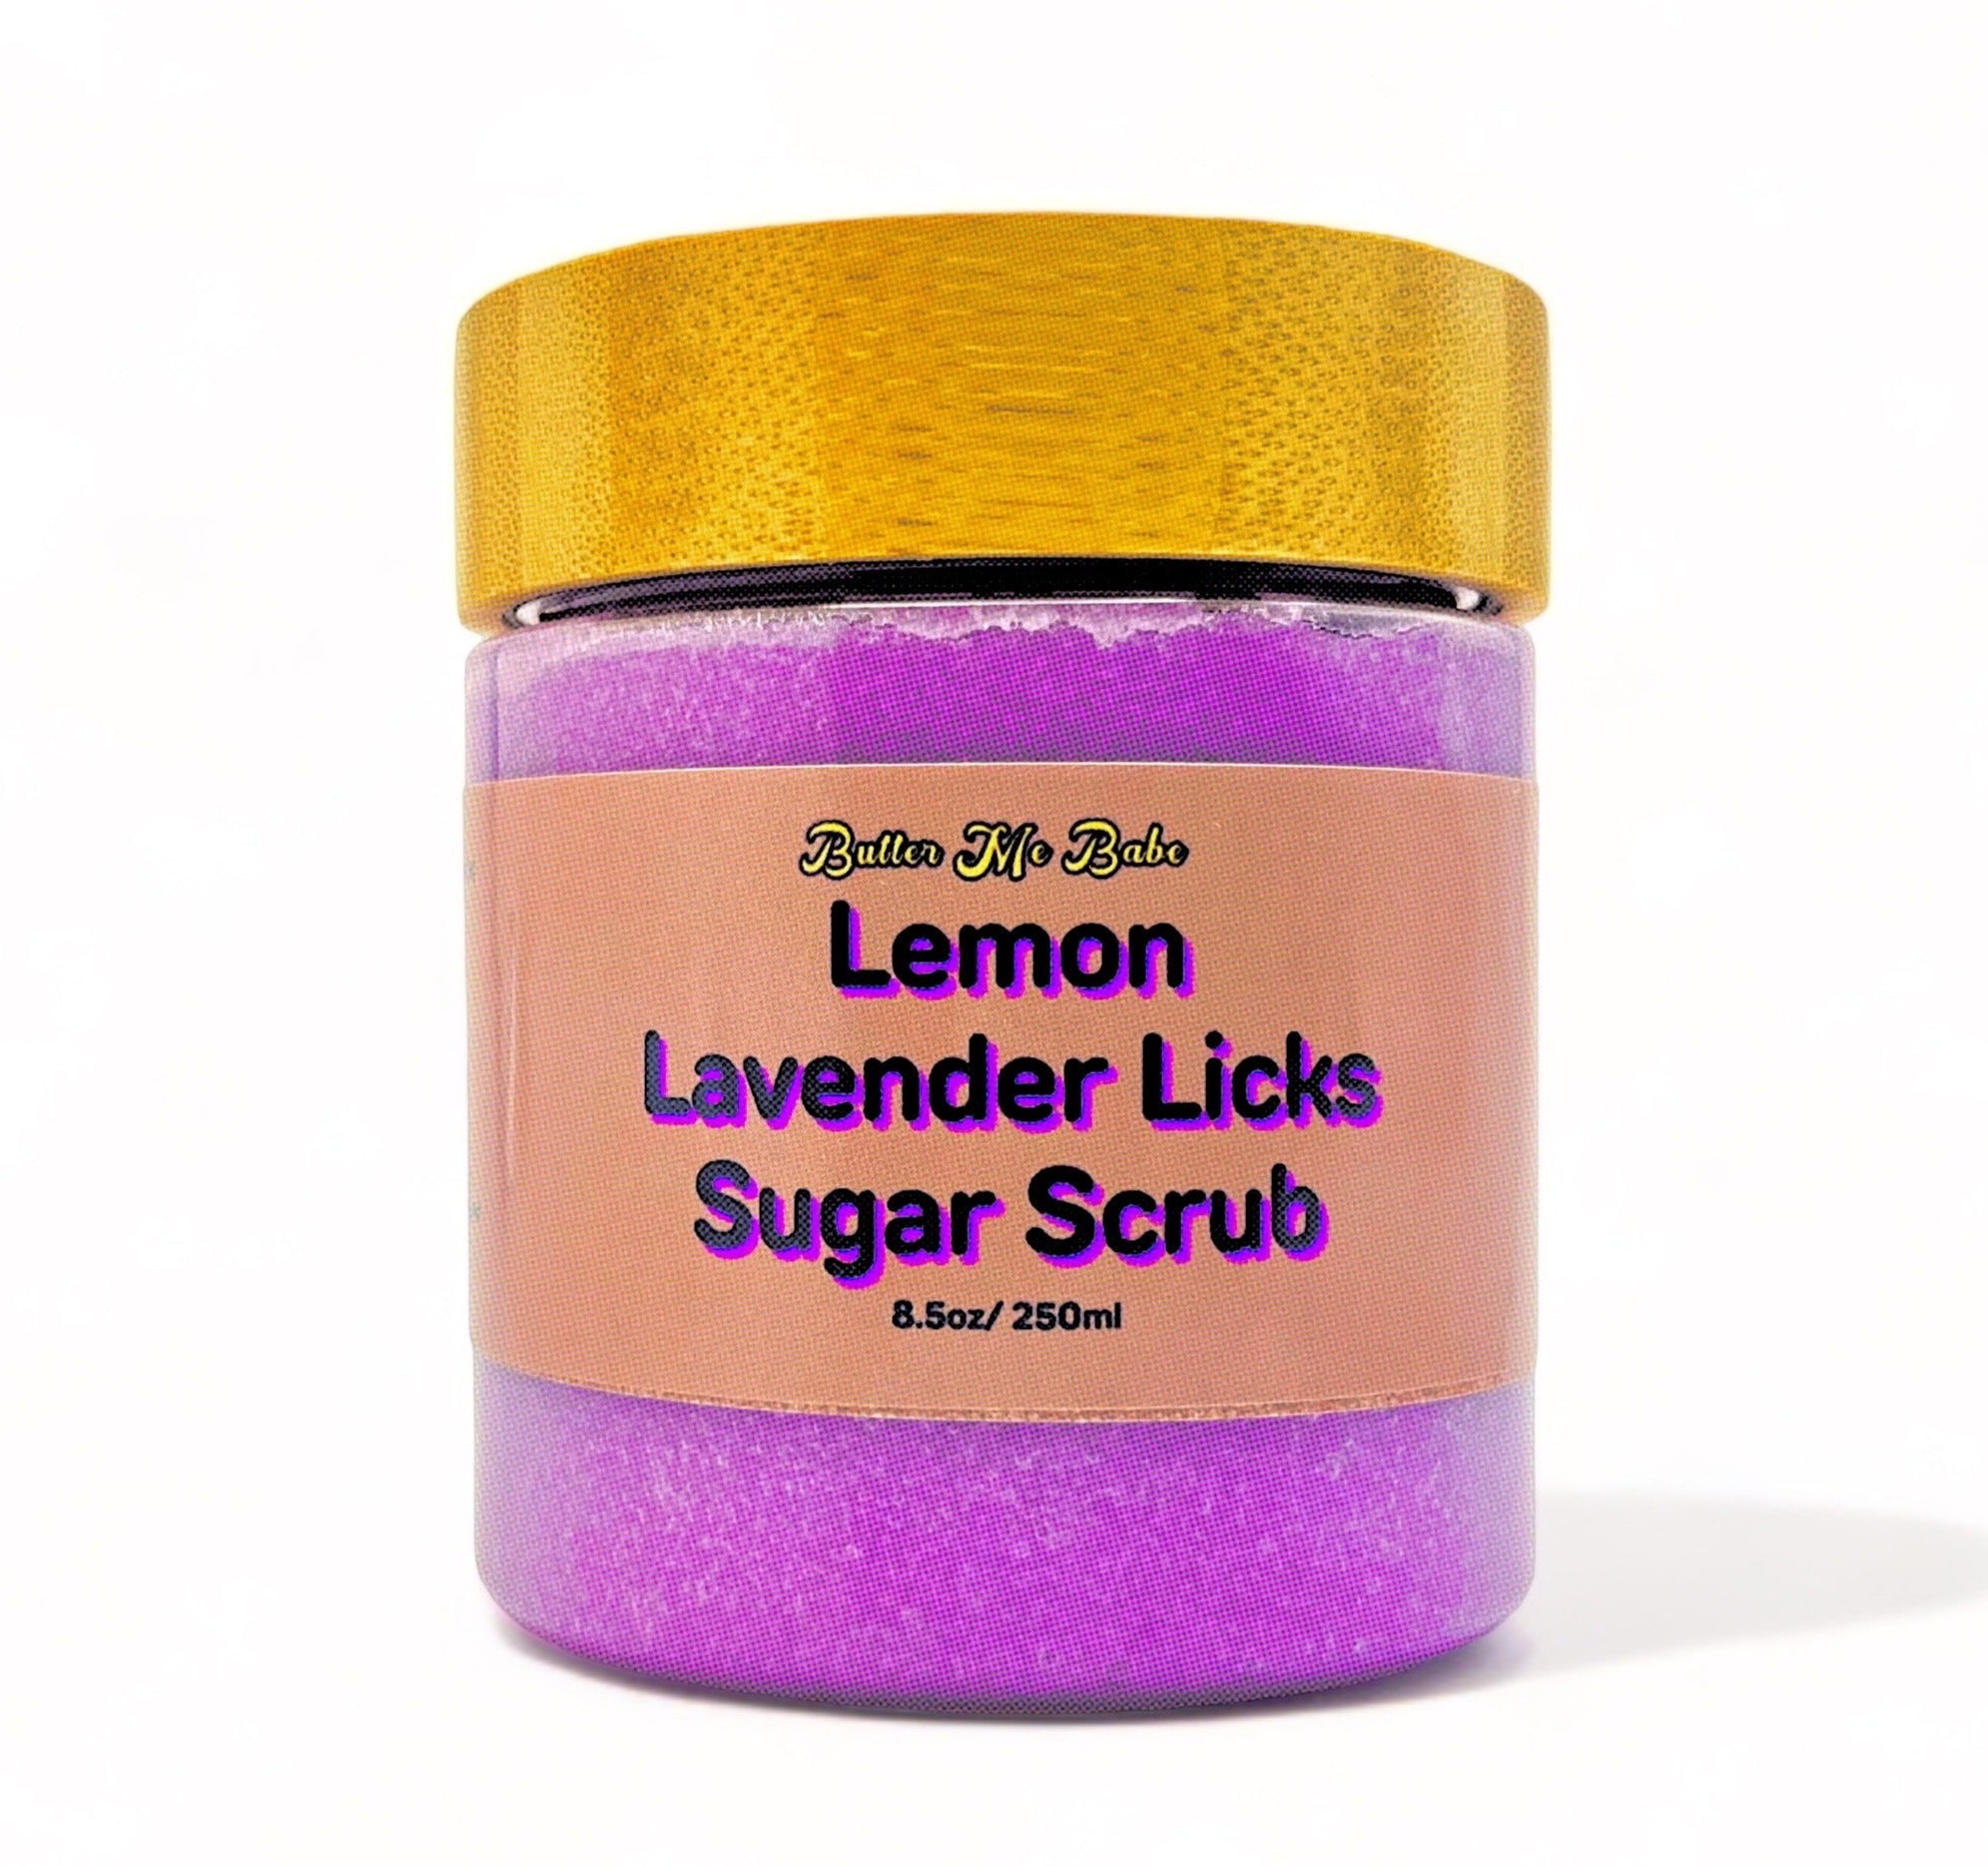 Lemon Lavender Licks Exfoliating Sugar Scrub